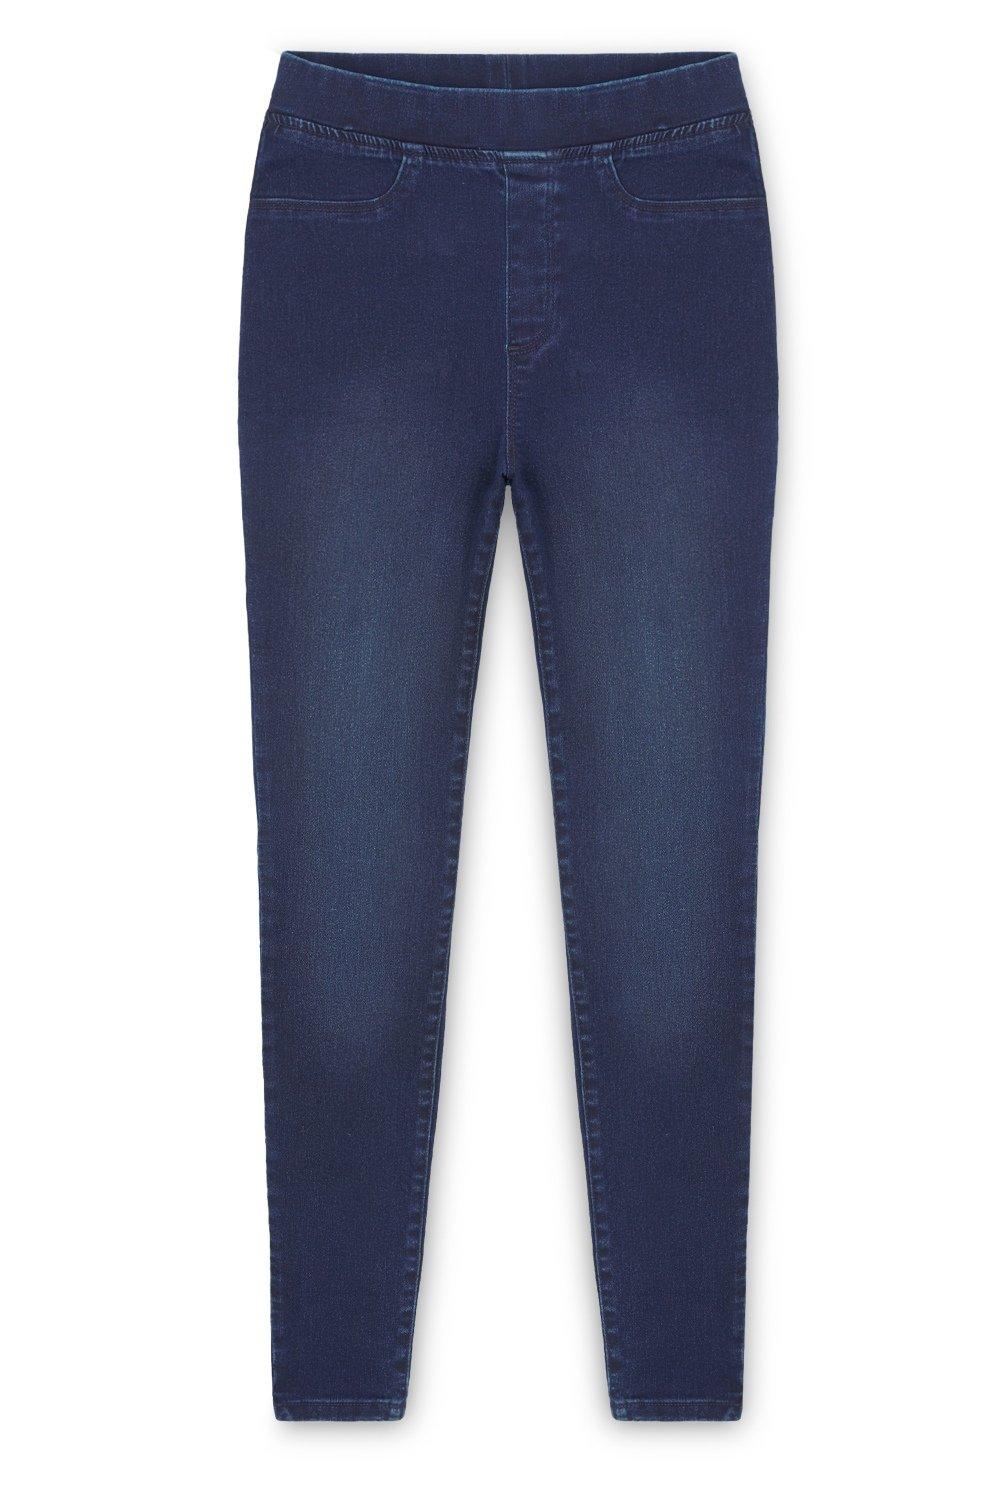 Эластичные джеггинсы с эластичной резинкой на талии CityComfort, синий женские джинсы джинсы для мамы джинсы с высокой талией женские эластичные джинсы большого размера эластичные джинсы женские потертые дж